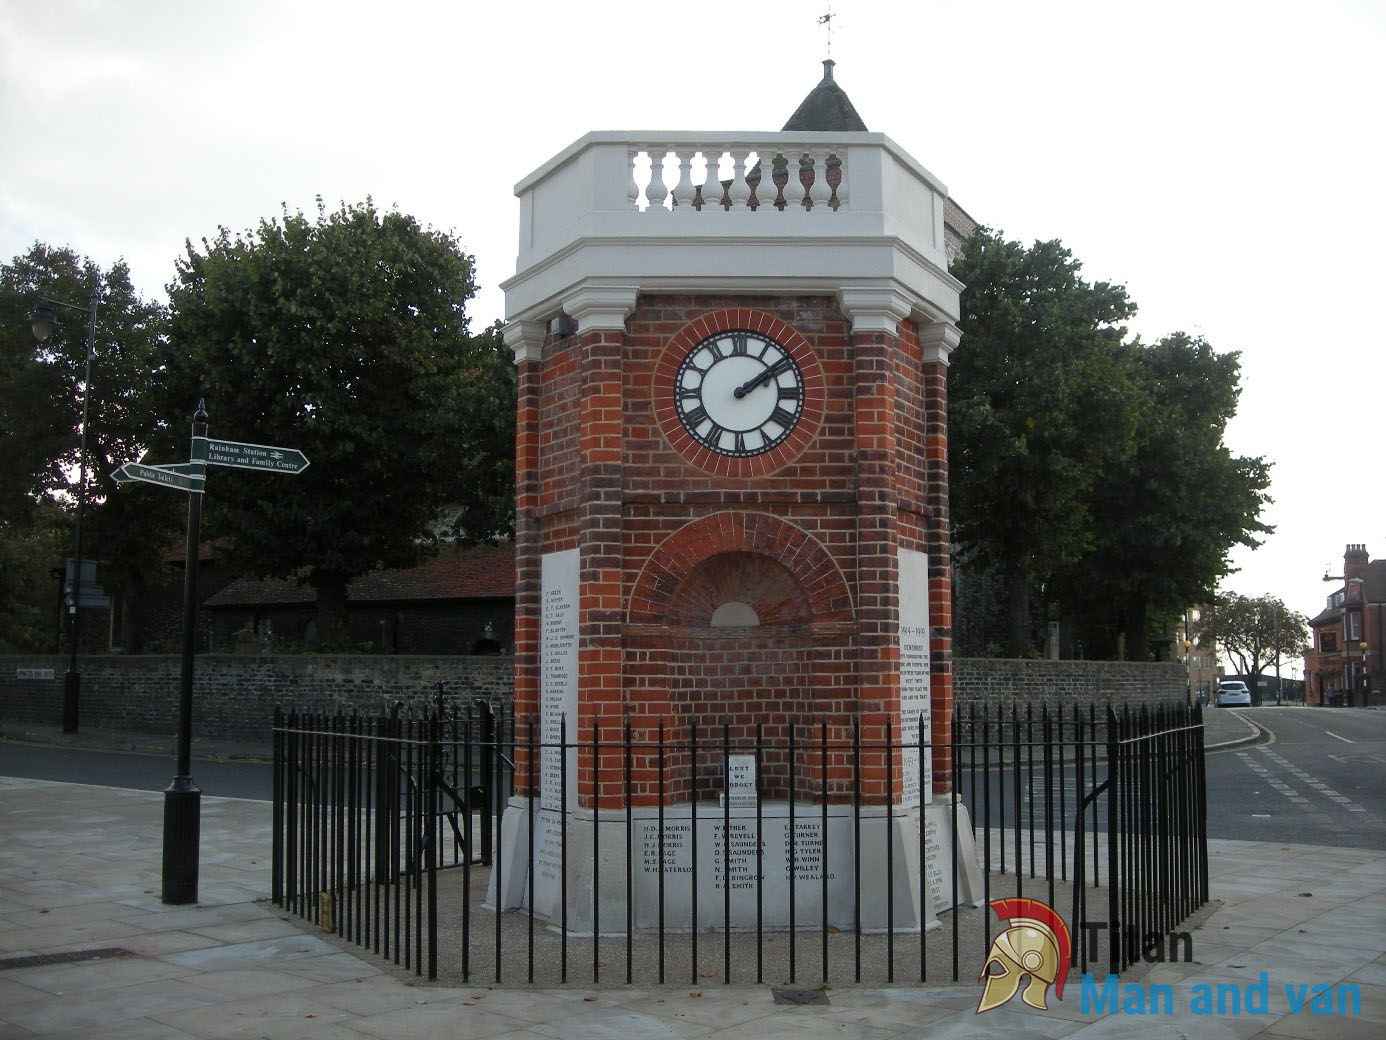 War Memorial Clock Tower, Rainham